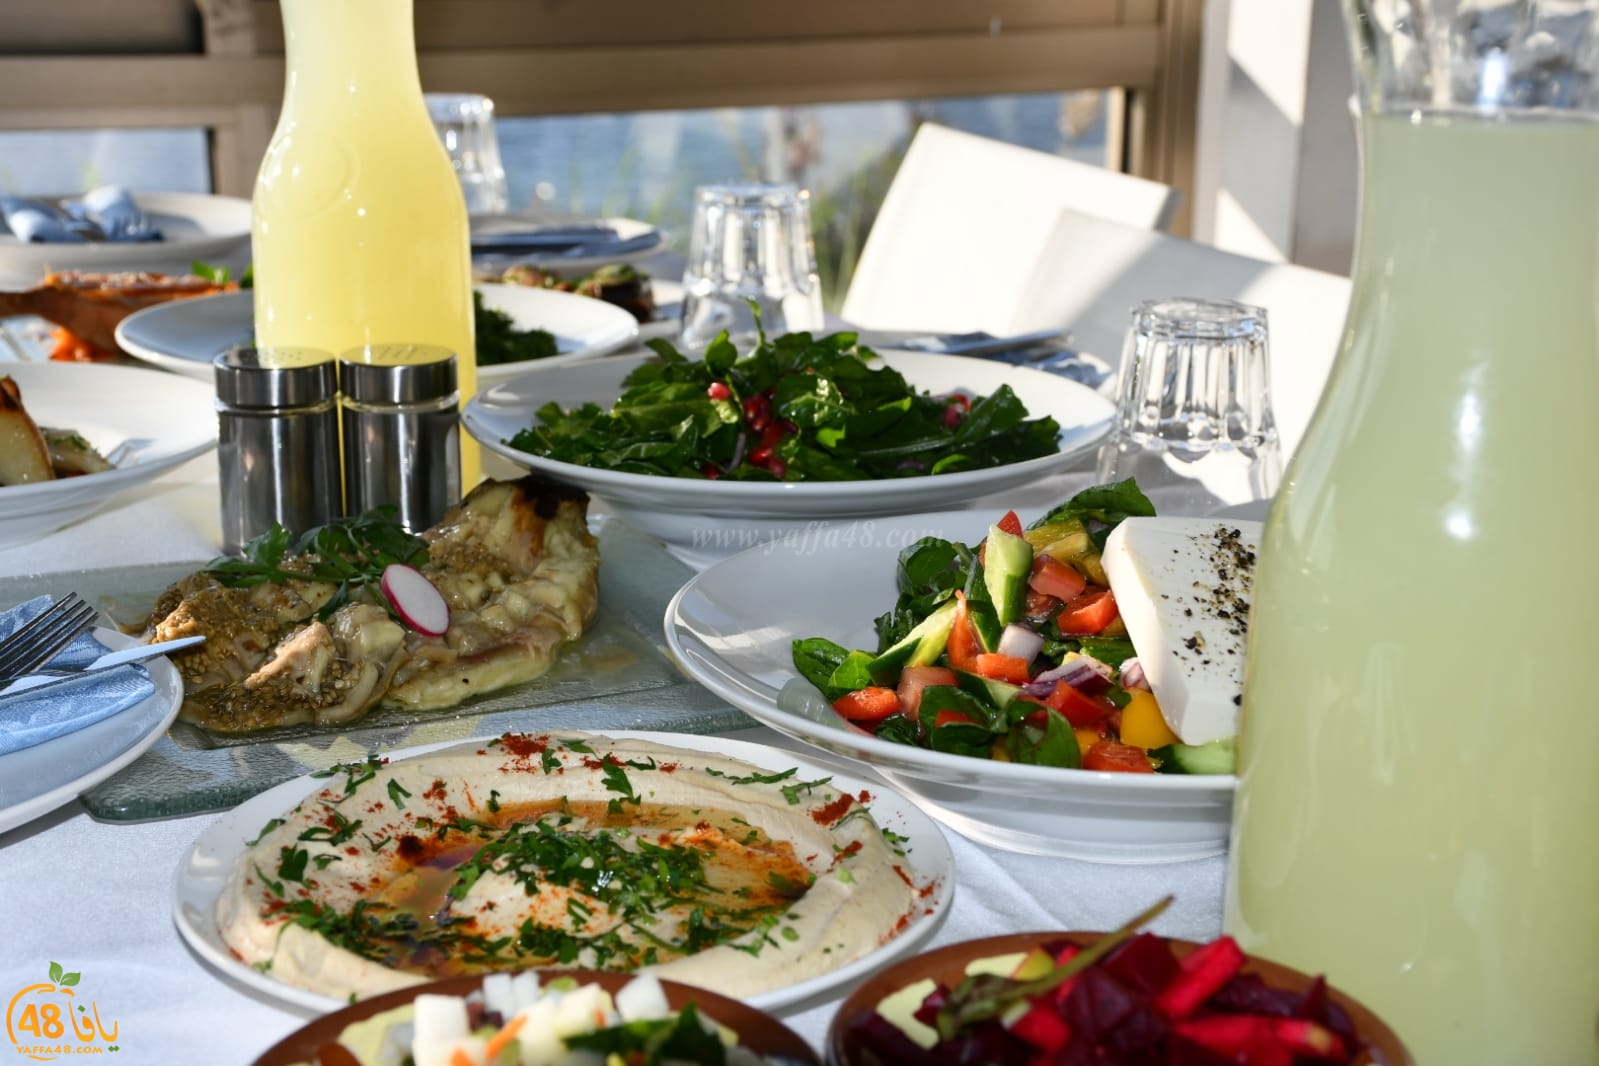  قريباً: افتتاح مطعم عروس البحر باباي الأقرب على شاطئ بحر يافا الساحر 